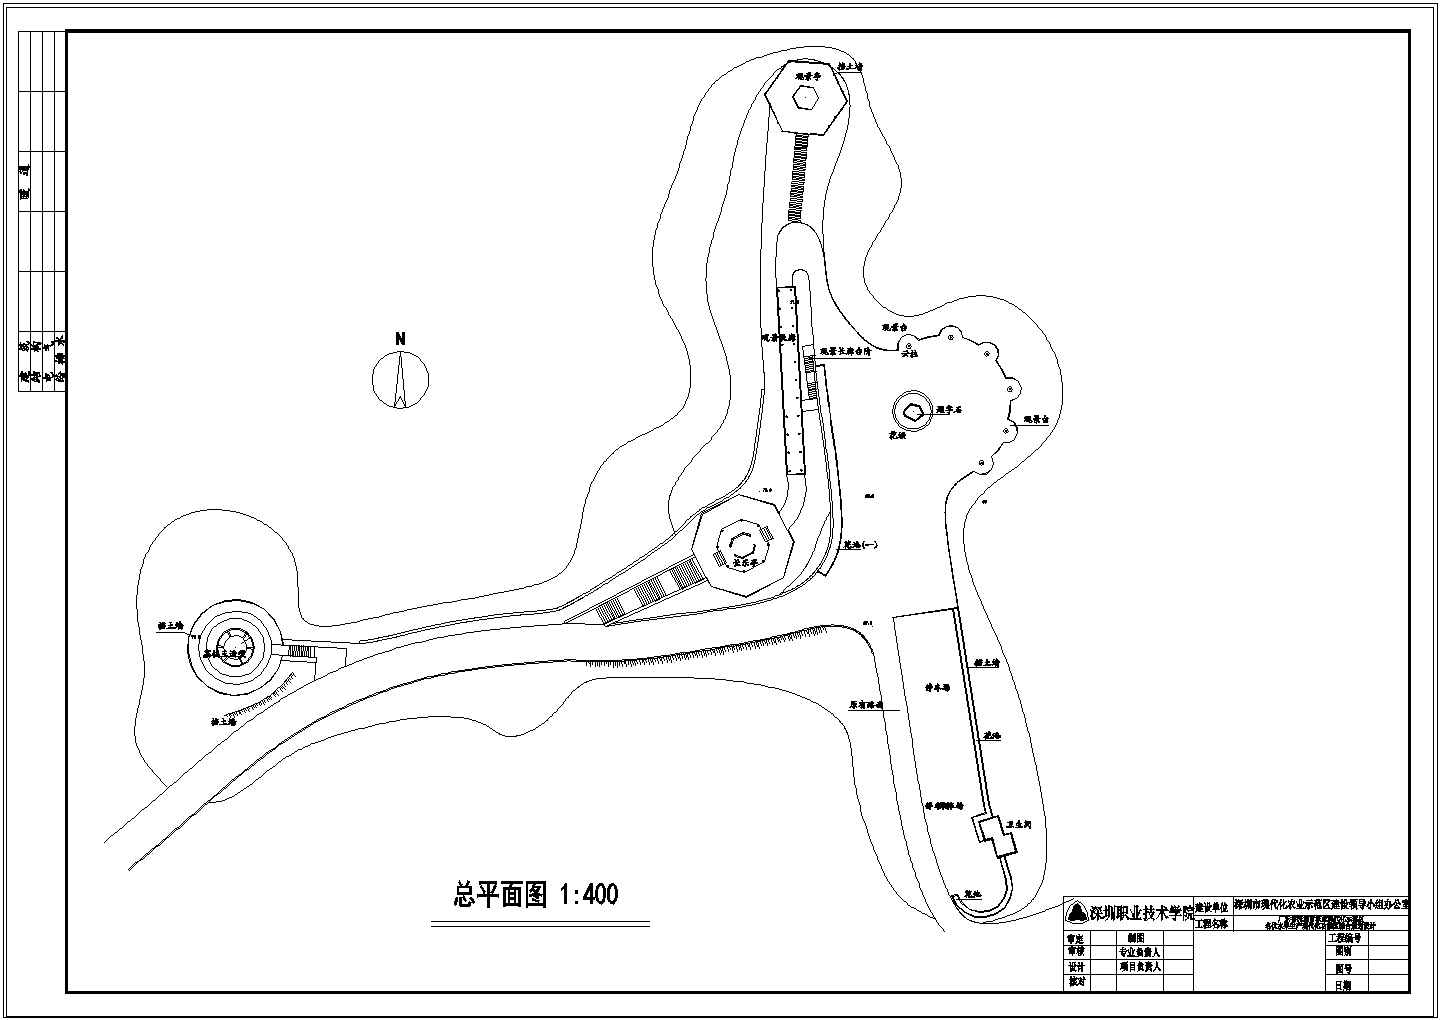 深圳农业现代化示范区景观施工图-3#-总平面.